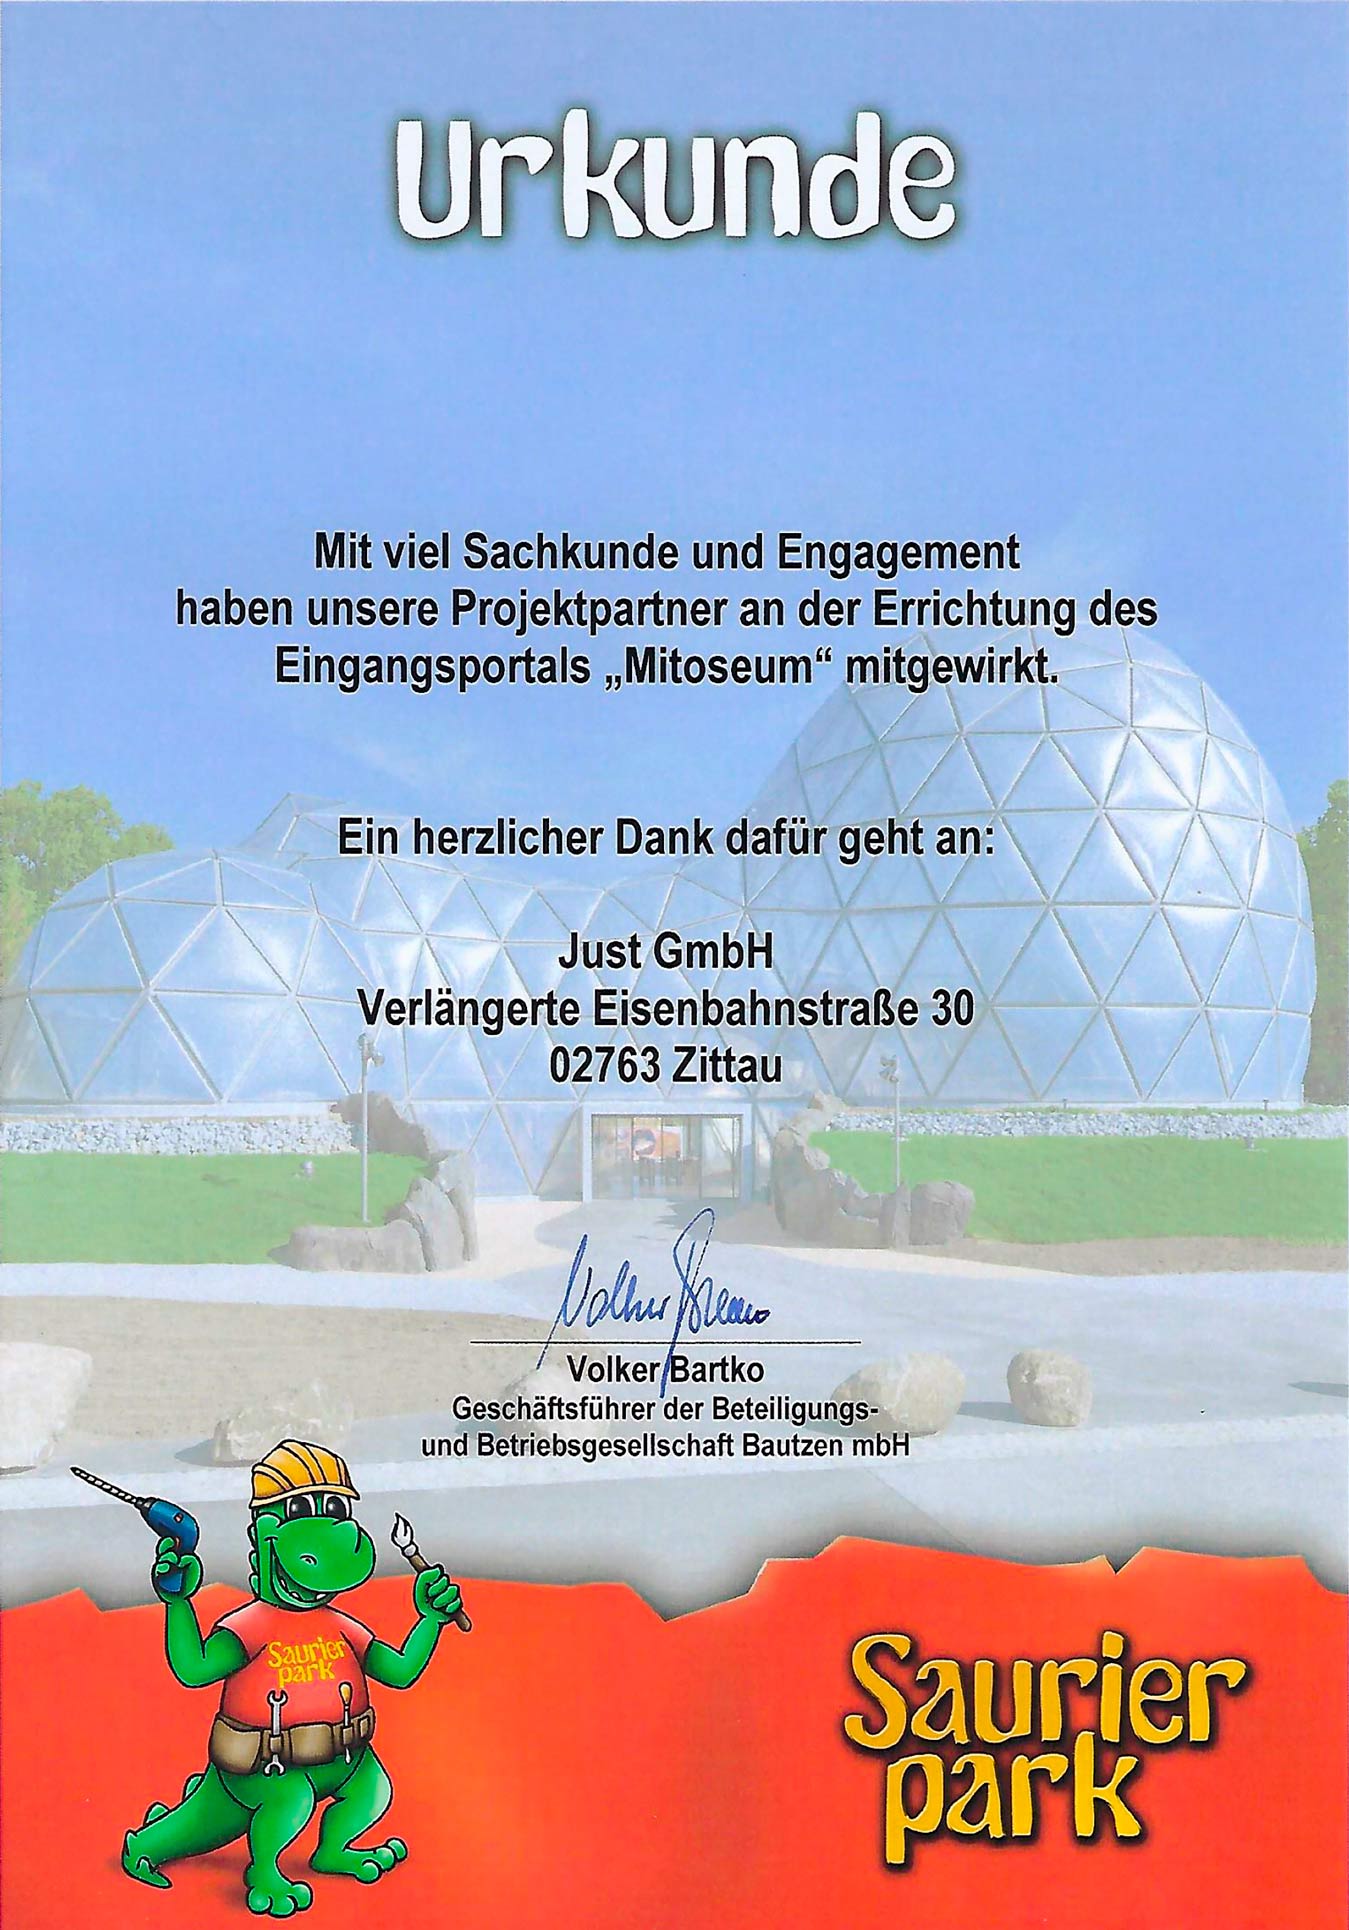 Urkunde-Saurierpark-Just-GmbH